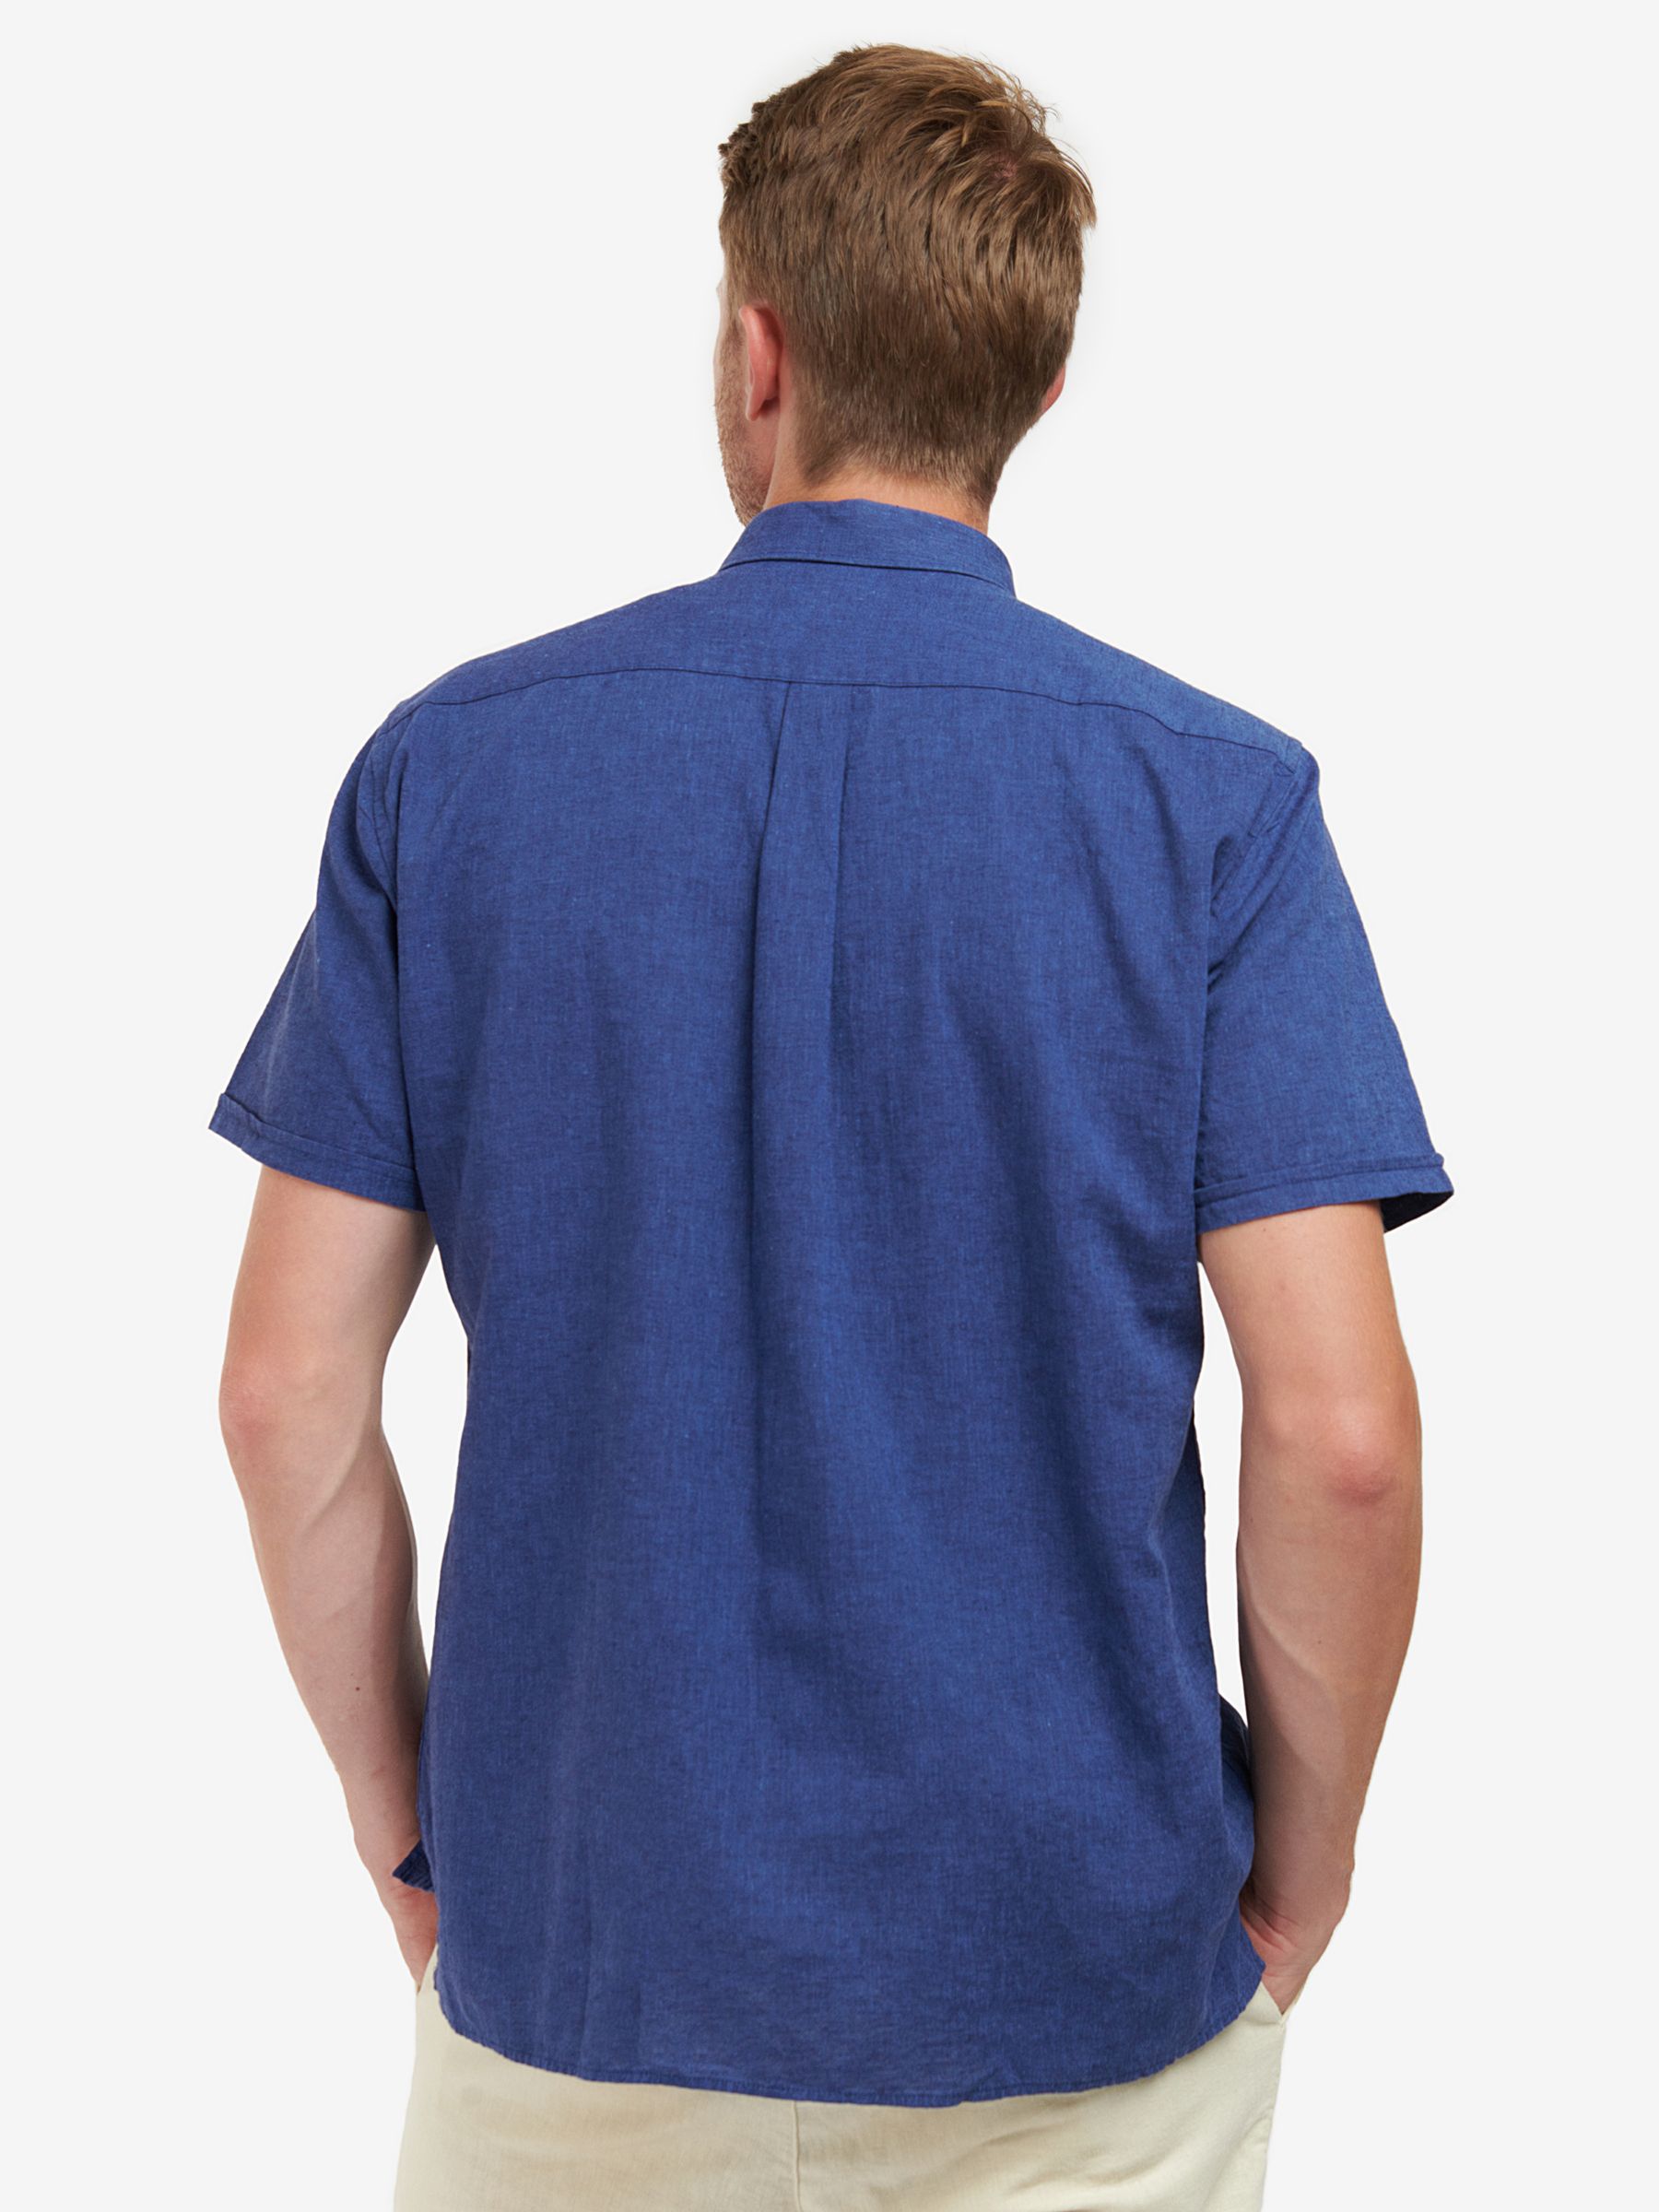 Barbour Nelson Linen Blend Short Sleeve Shirt, Indigo, XL